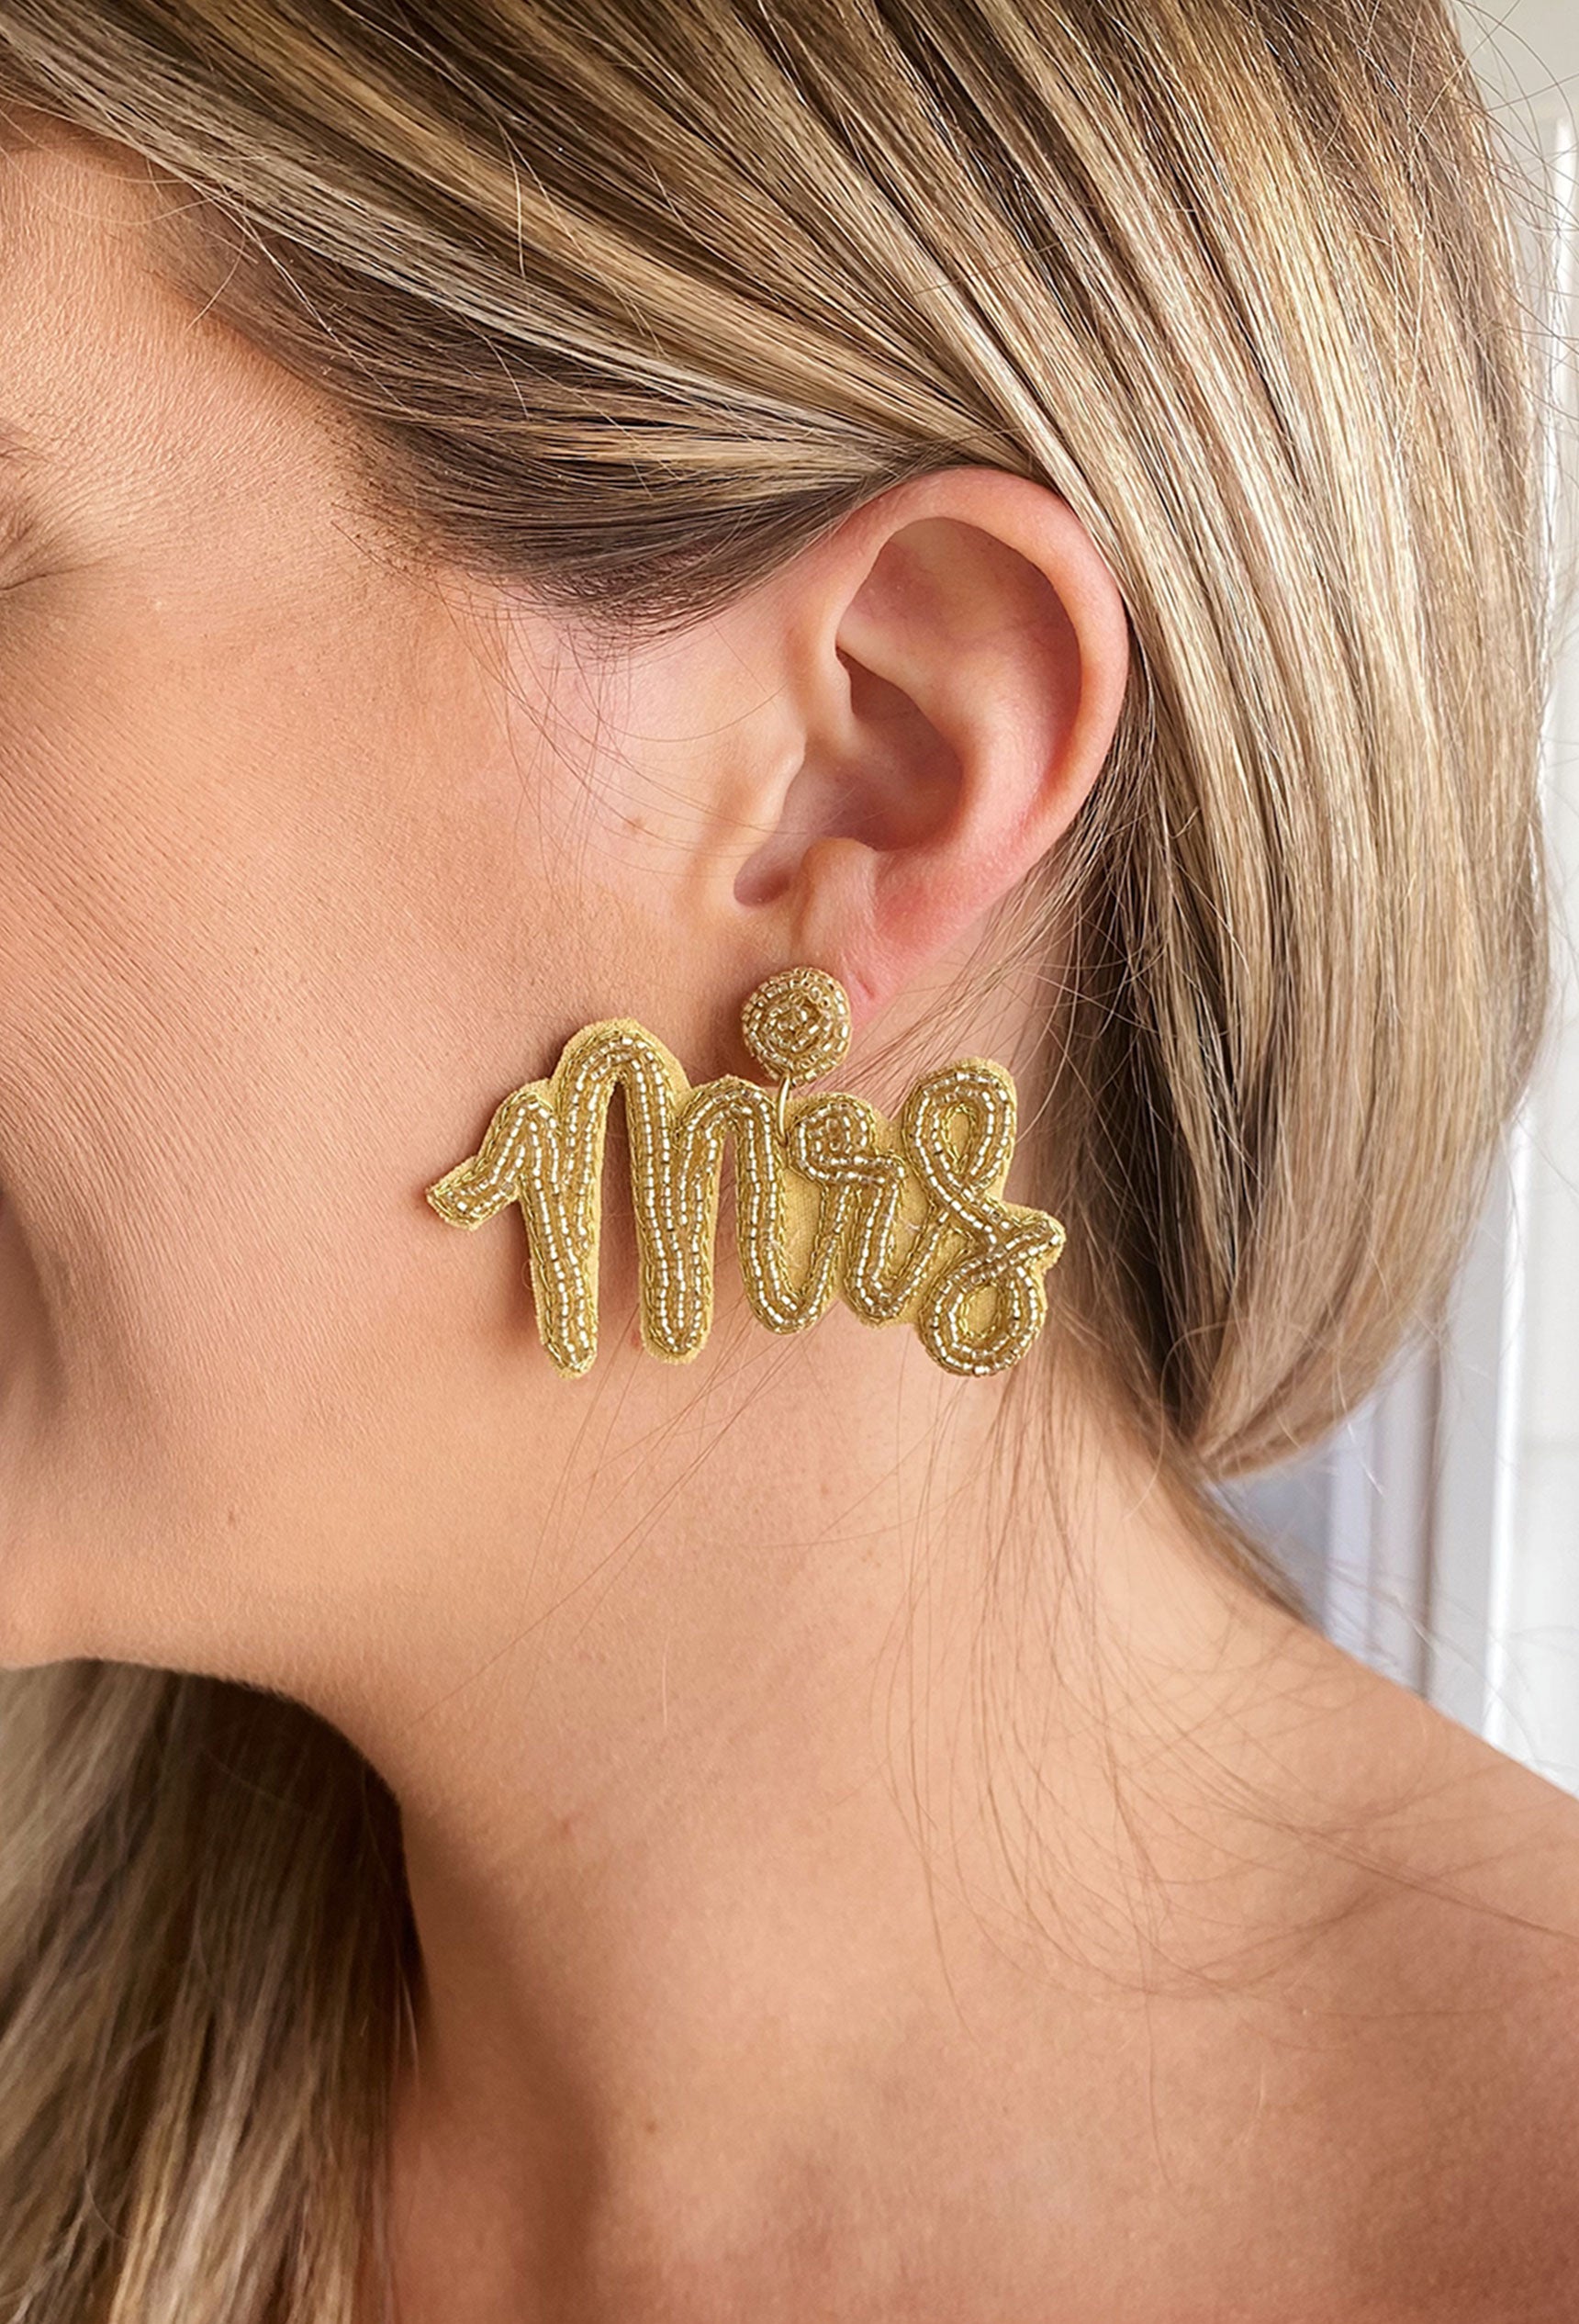 Mrs. Beaded Earrings, gold beaded earrings that say "Mrs"